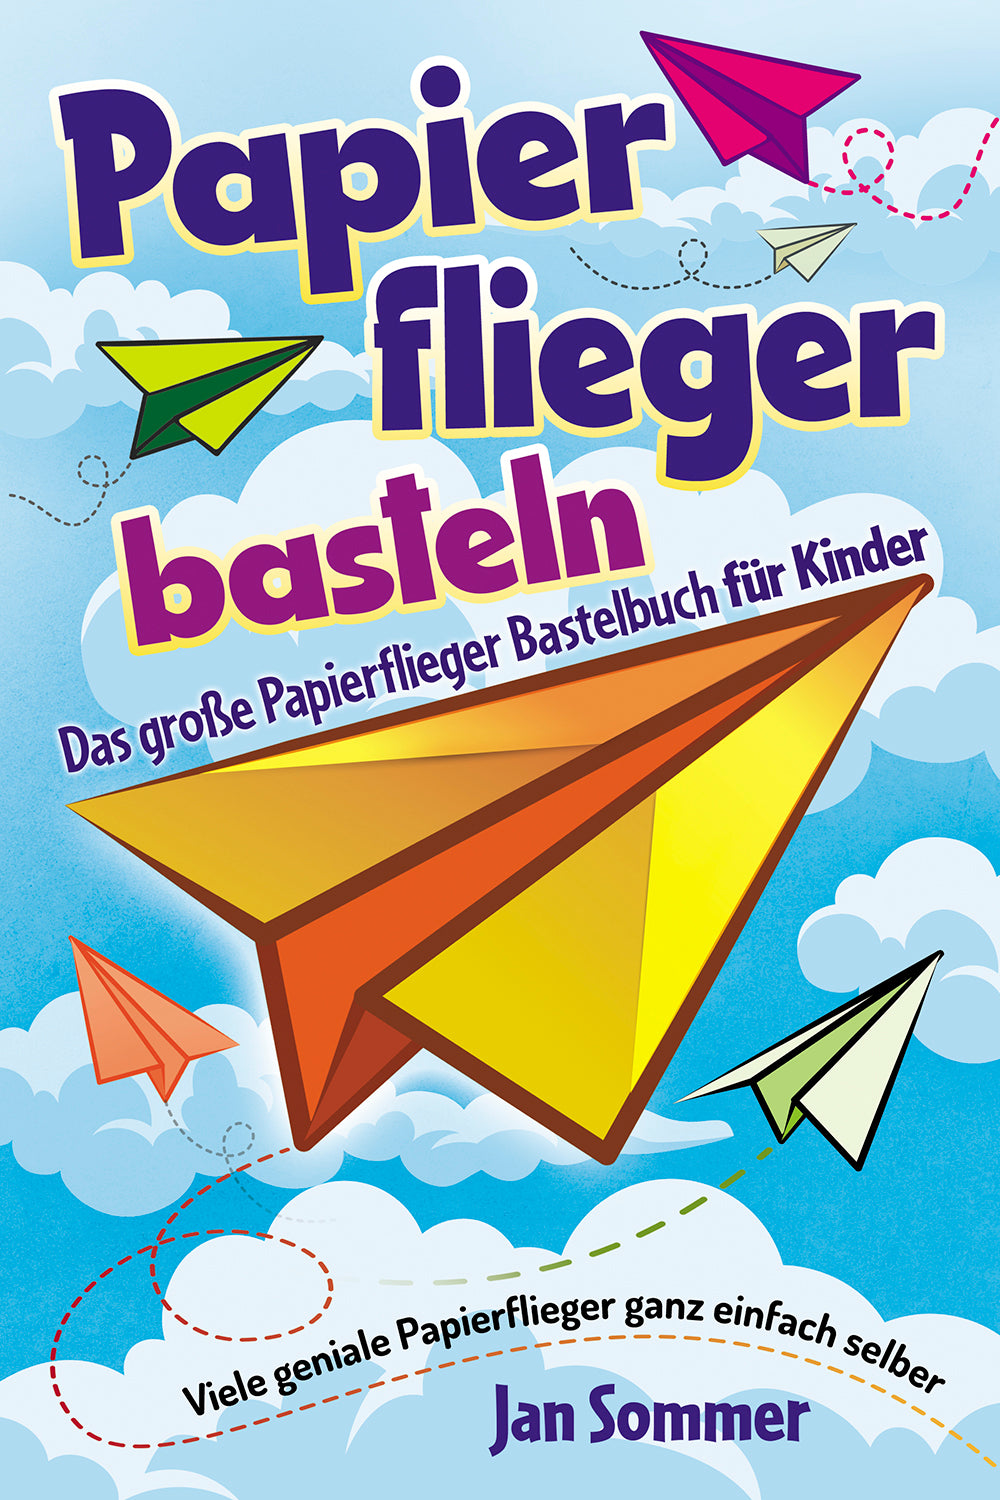 Papierflieger basteln: Das große Papierflieger Bastelbuch für Kinder - Viele geniale Papierflieger ganz einfach selber bauen